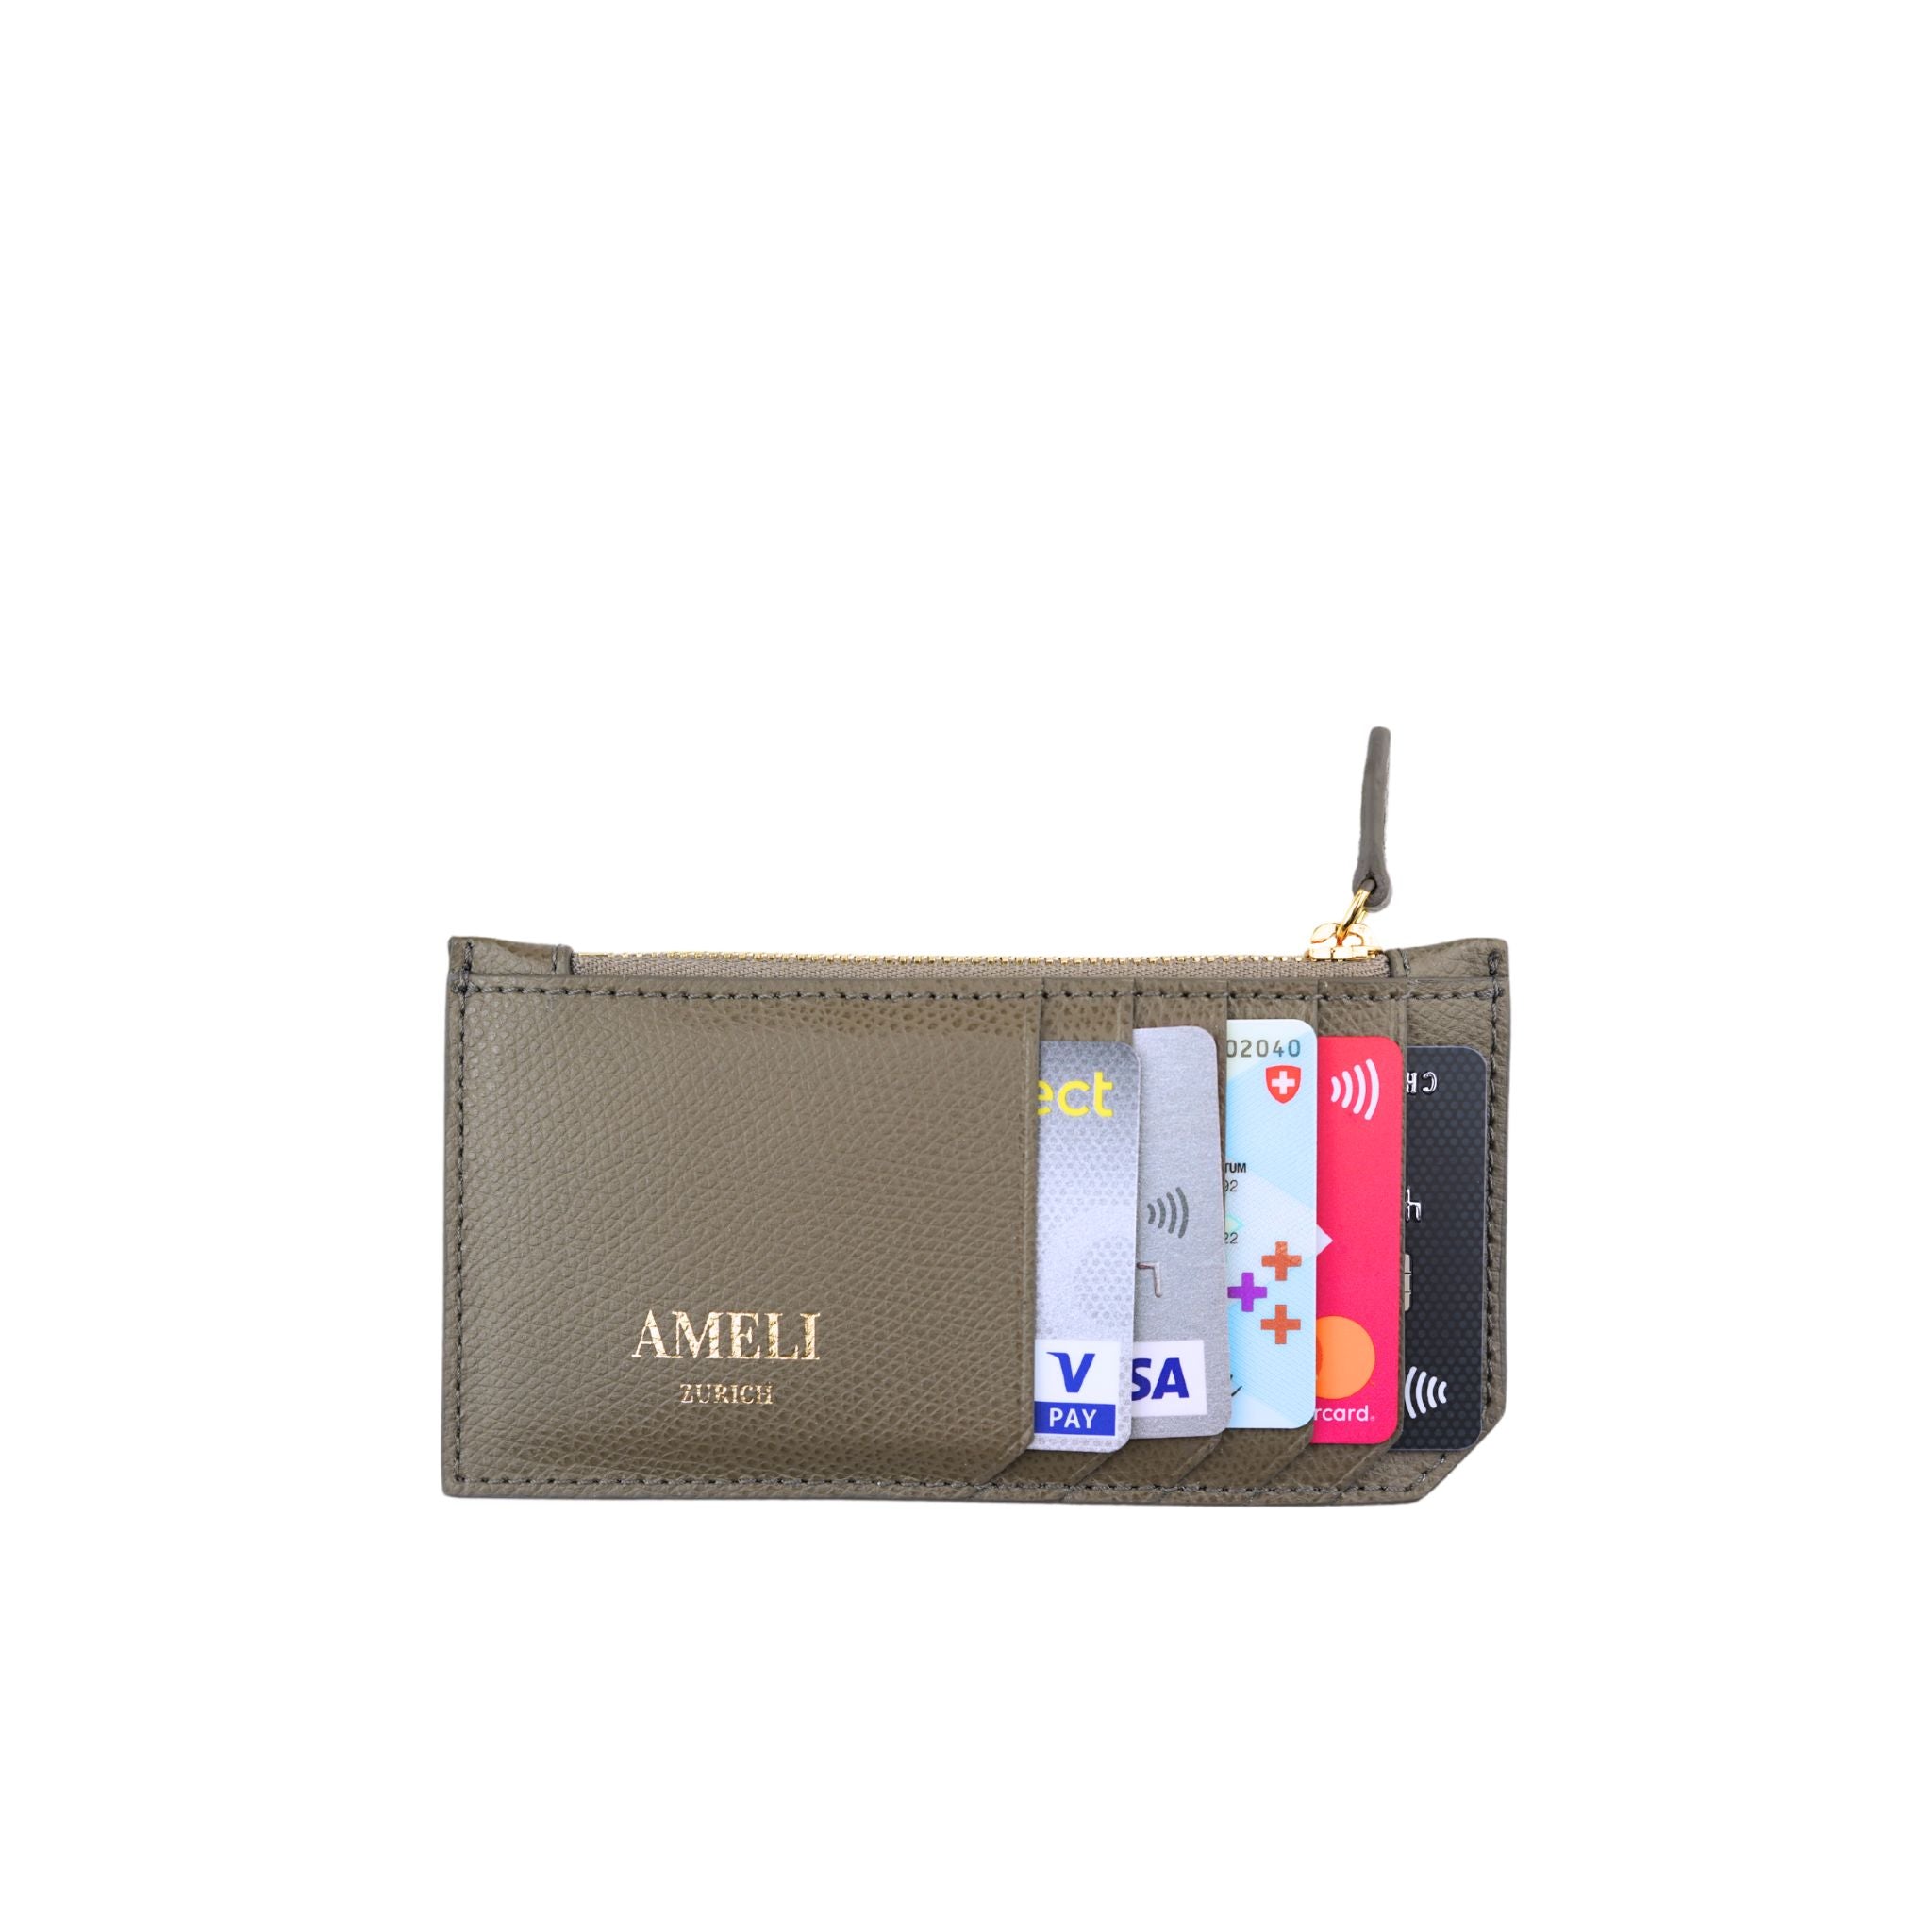 AMELI Zurich | Card holder | Greige | Pebbled Leather | Front